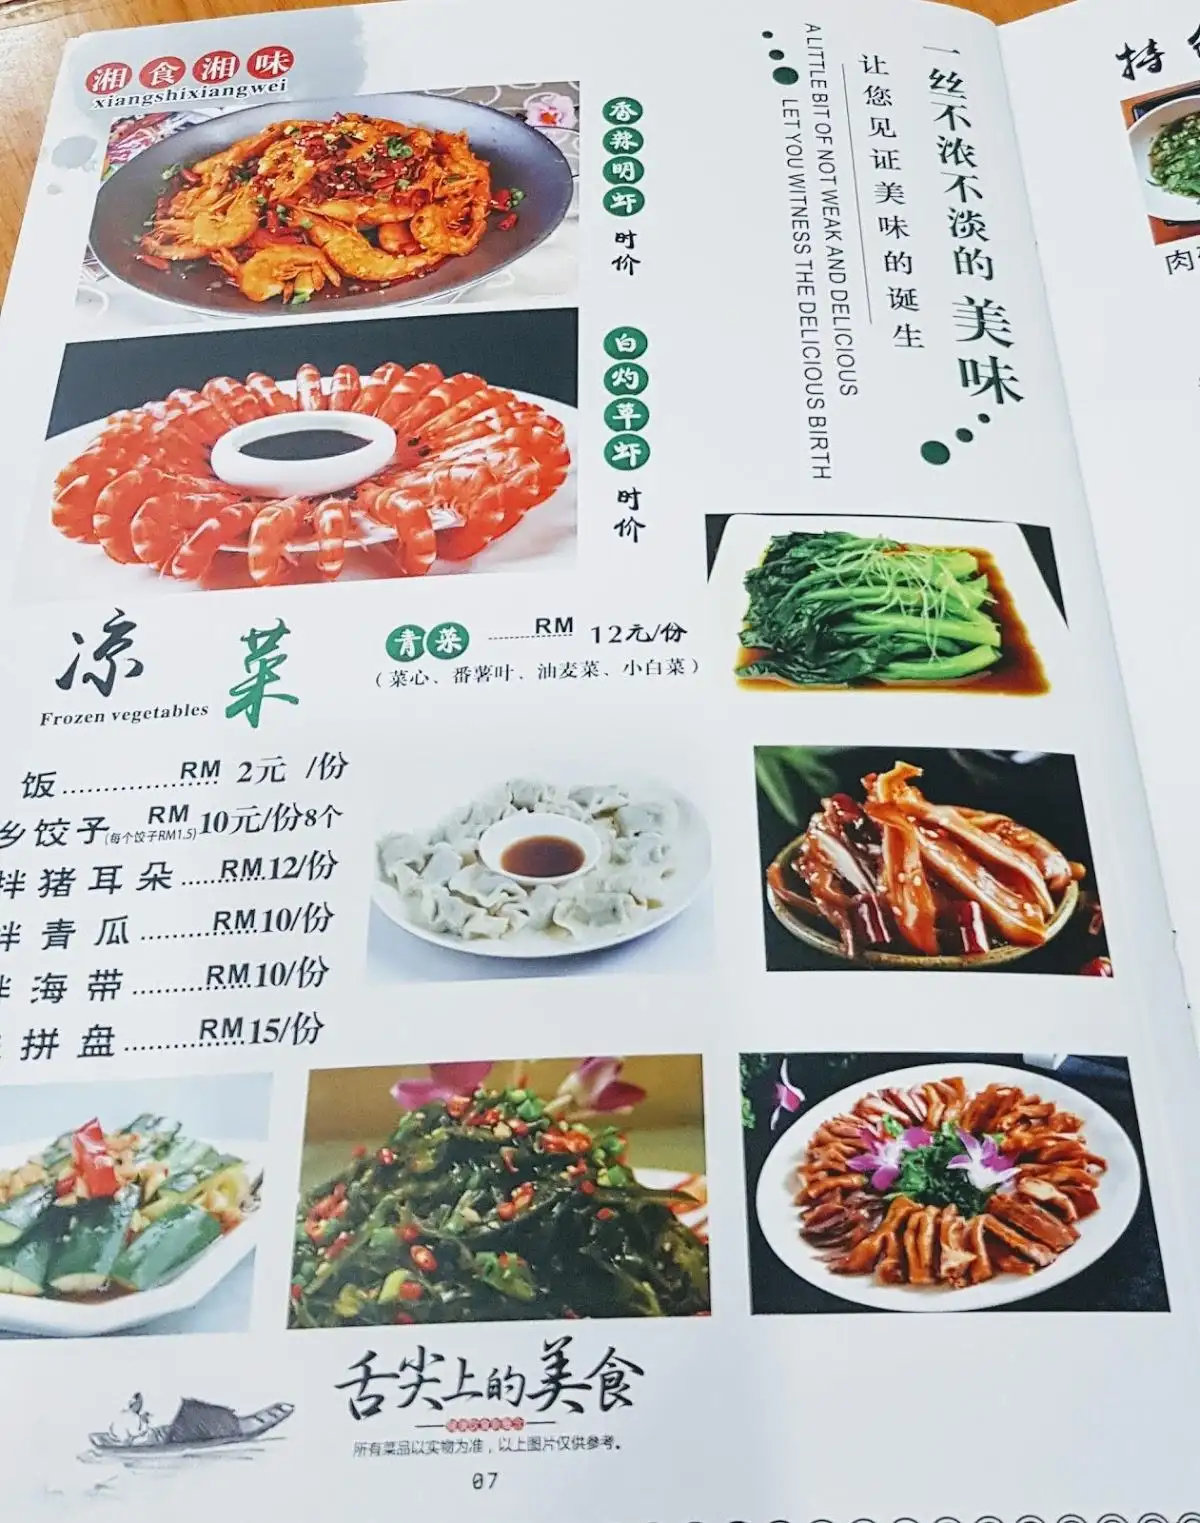 xiang shi xiang wei restaurant